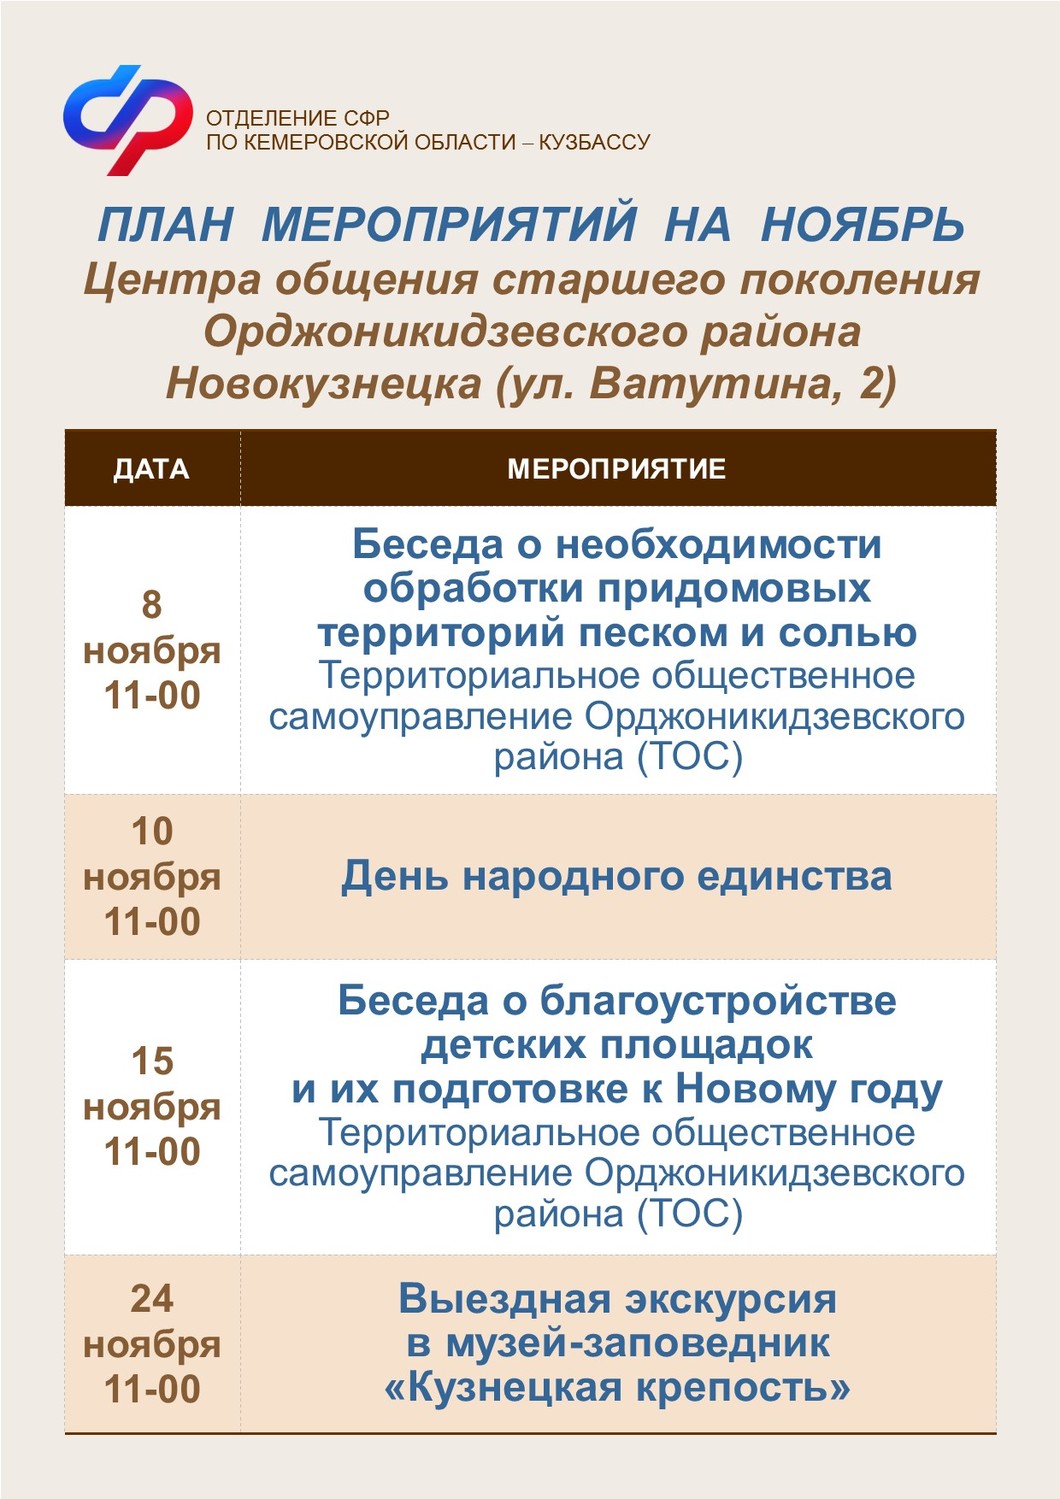 План мероприятий на ноябрь Центров общения старшего поколения города Новокузнецка